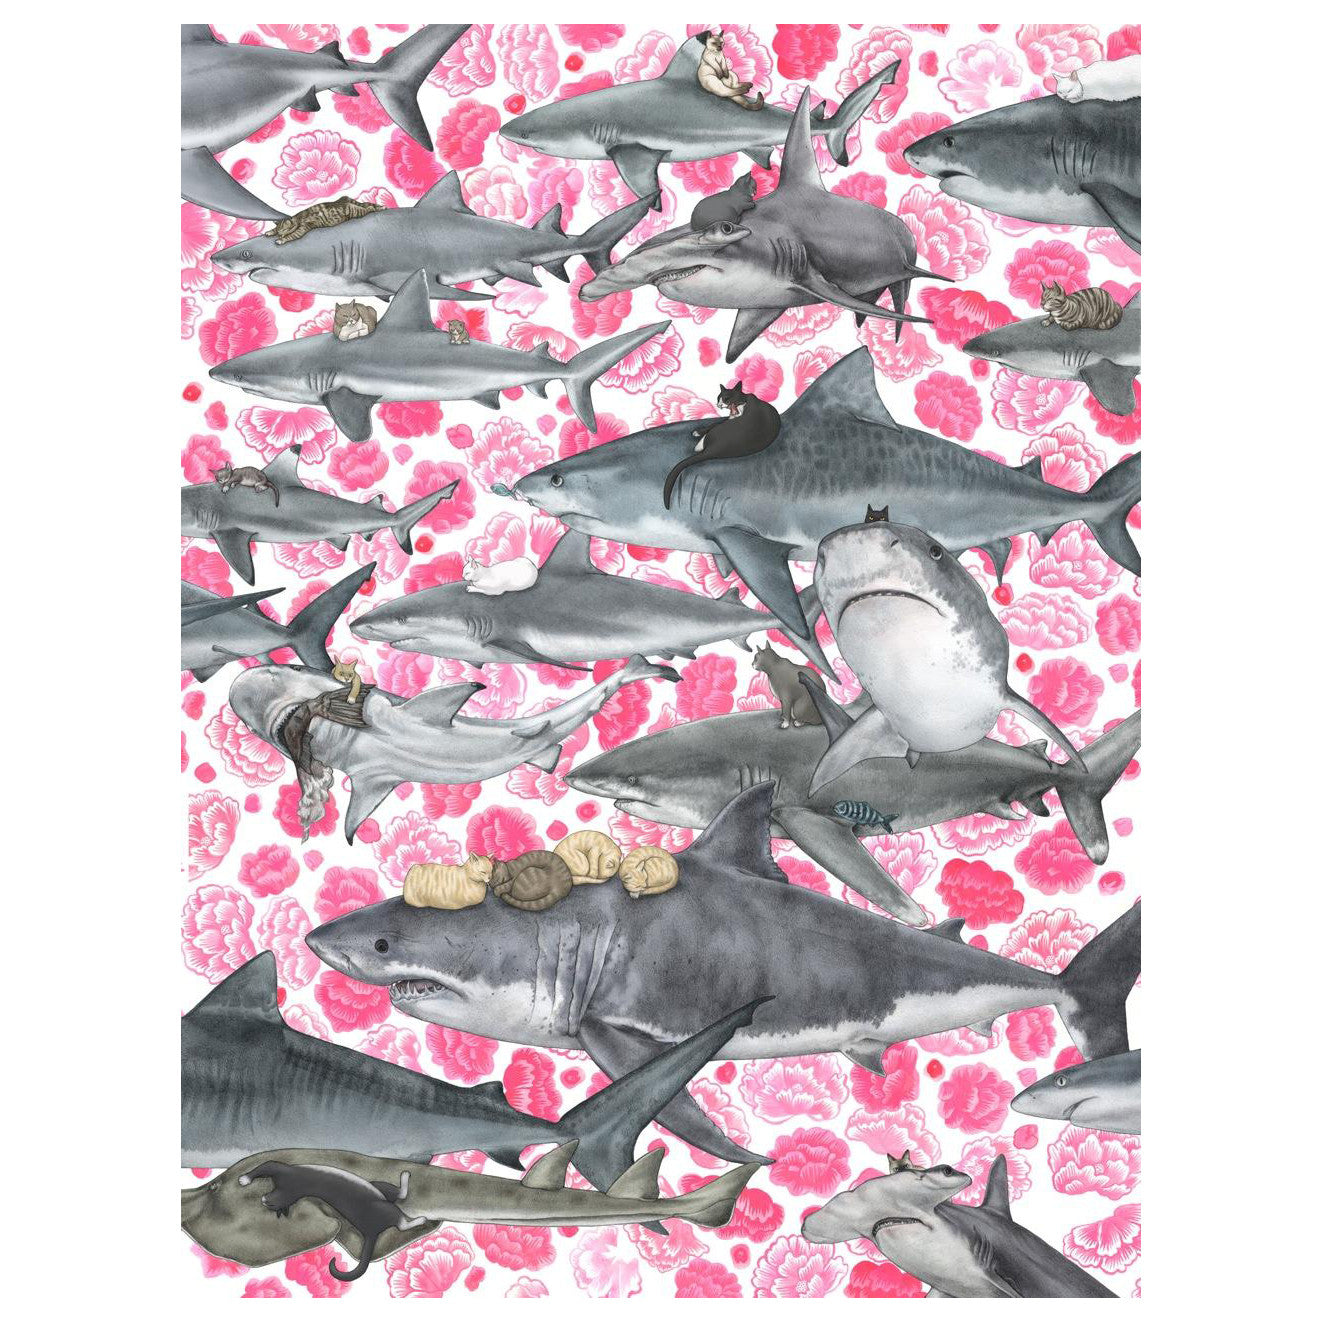 Kozyndan | Hunters: Sharks and Kitties Poster